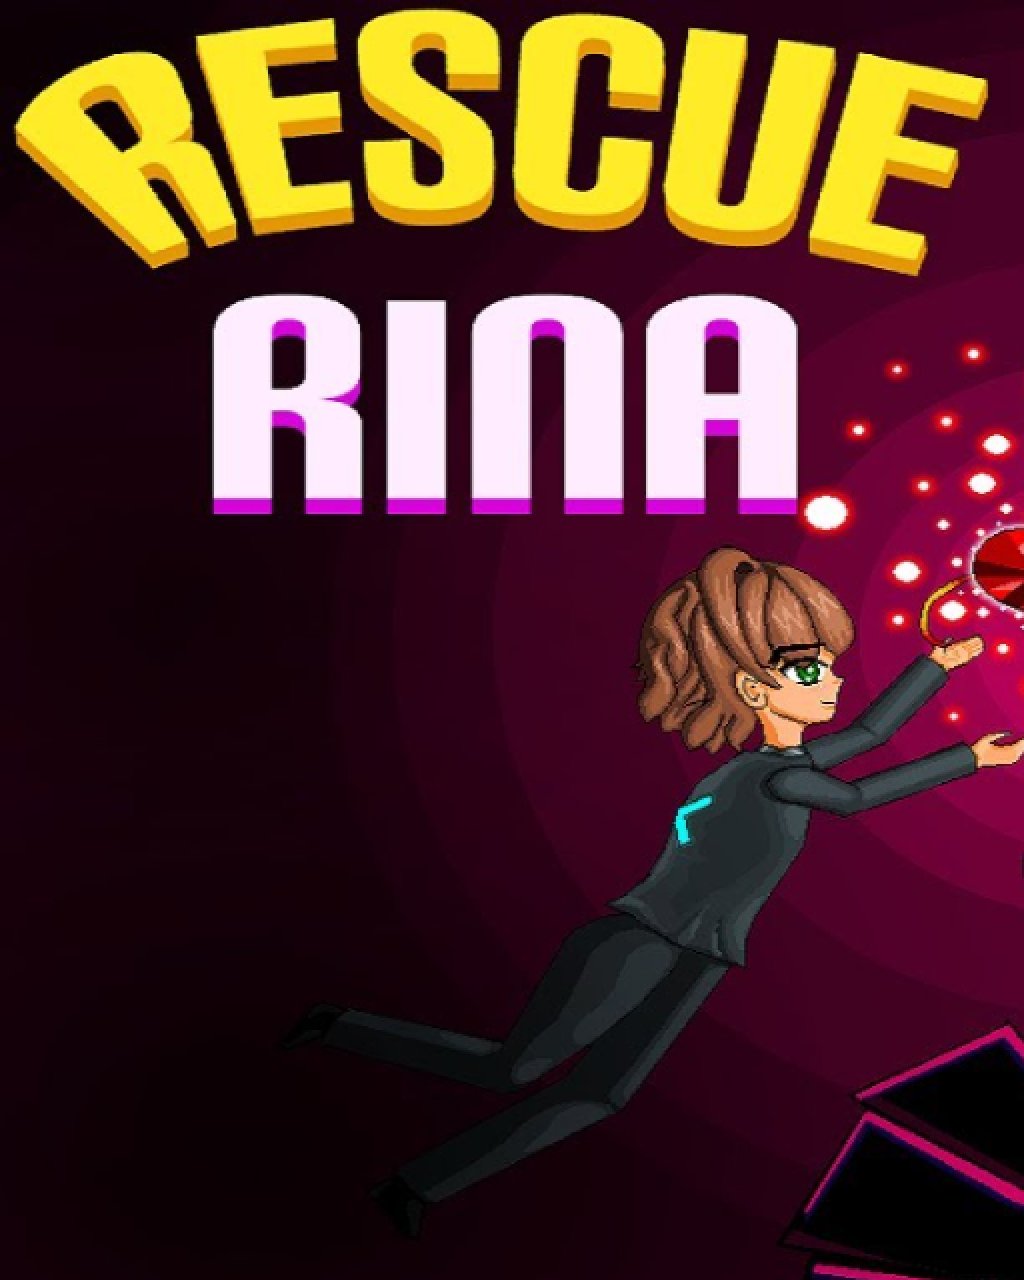 Rescue Rina